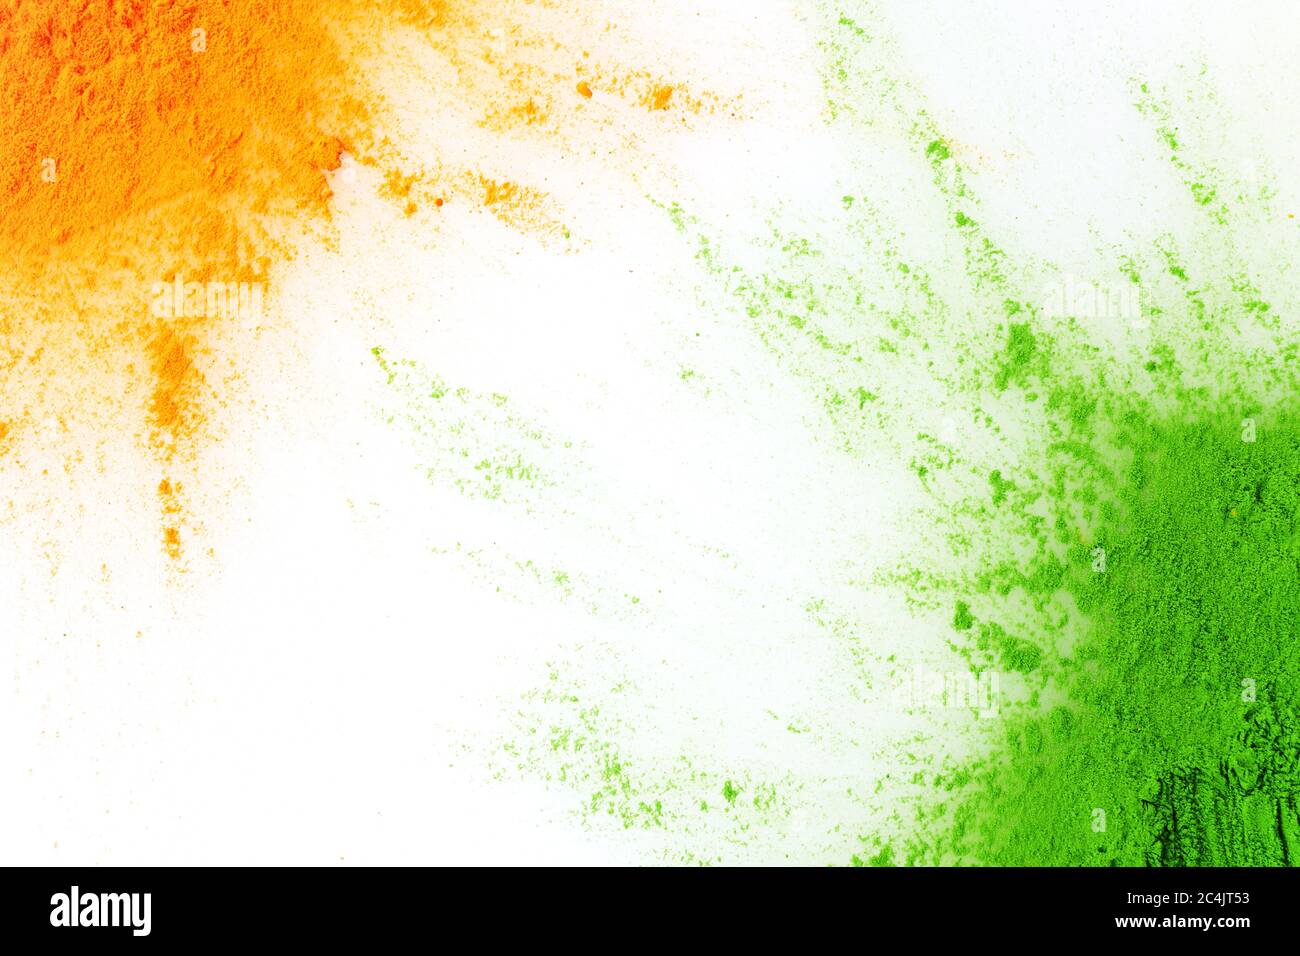 Màu cam và xanh lá phun bột. Khái niệm cho Ấn Độ... Đắm chìm trong sắc màu cam và xanh lá phun bột, bạn sẽ được đưa đến với khái niệm độc đáo của Ấn Độ - một nền văn hóa tuyệt vời. Hãy tận hưởng vẻ đẹp của những sắc màu này khi bạn xem hình ảnh liên quan.